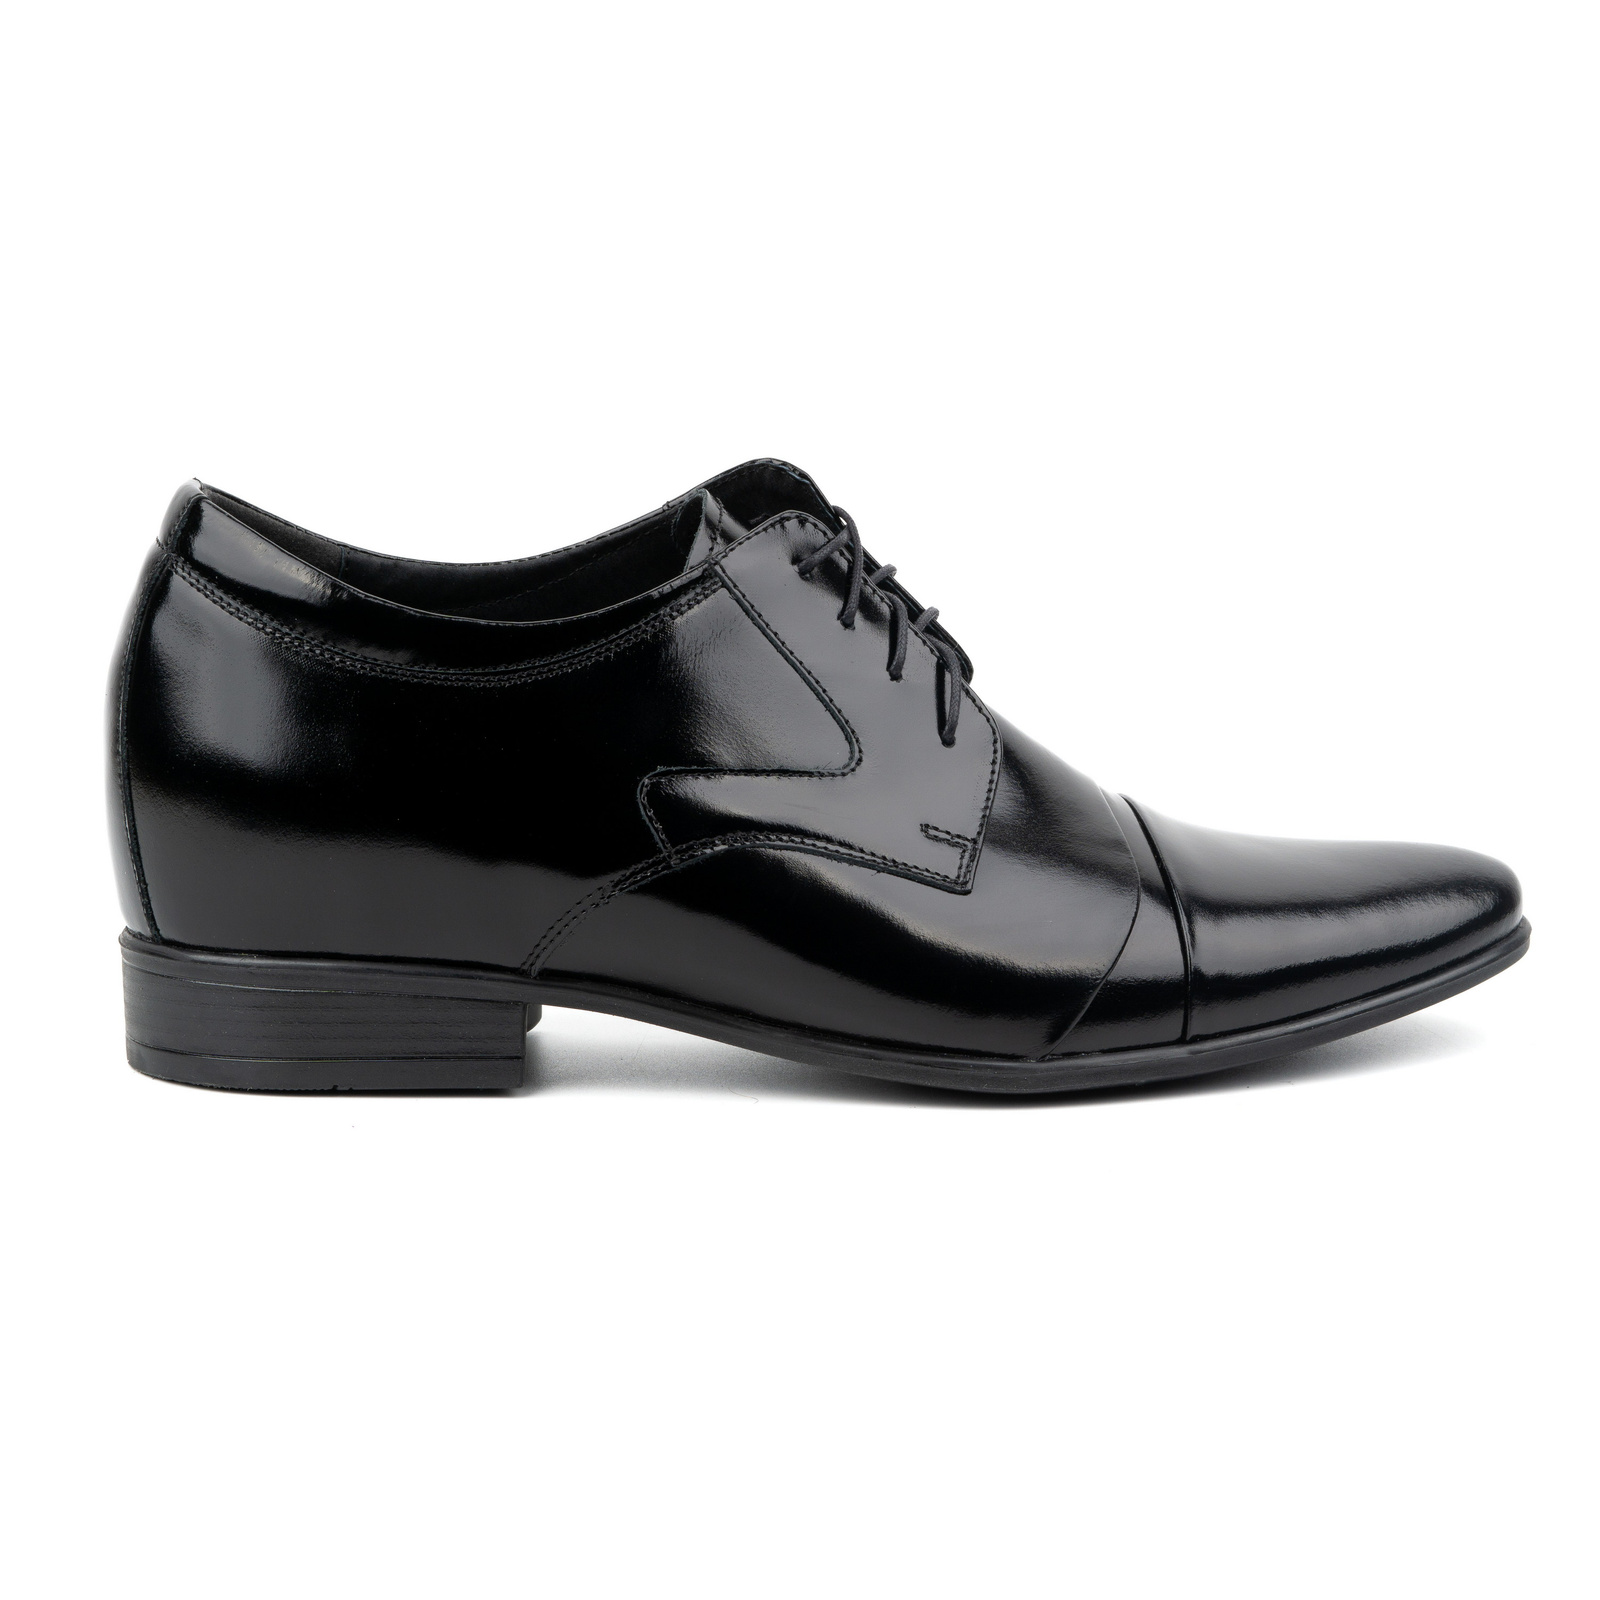 Buty męskie podwyższające skórzane eleganckie wizytowe P12 czarne - Buty Olivier